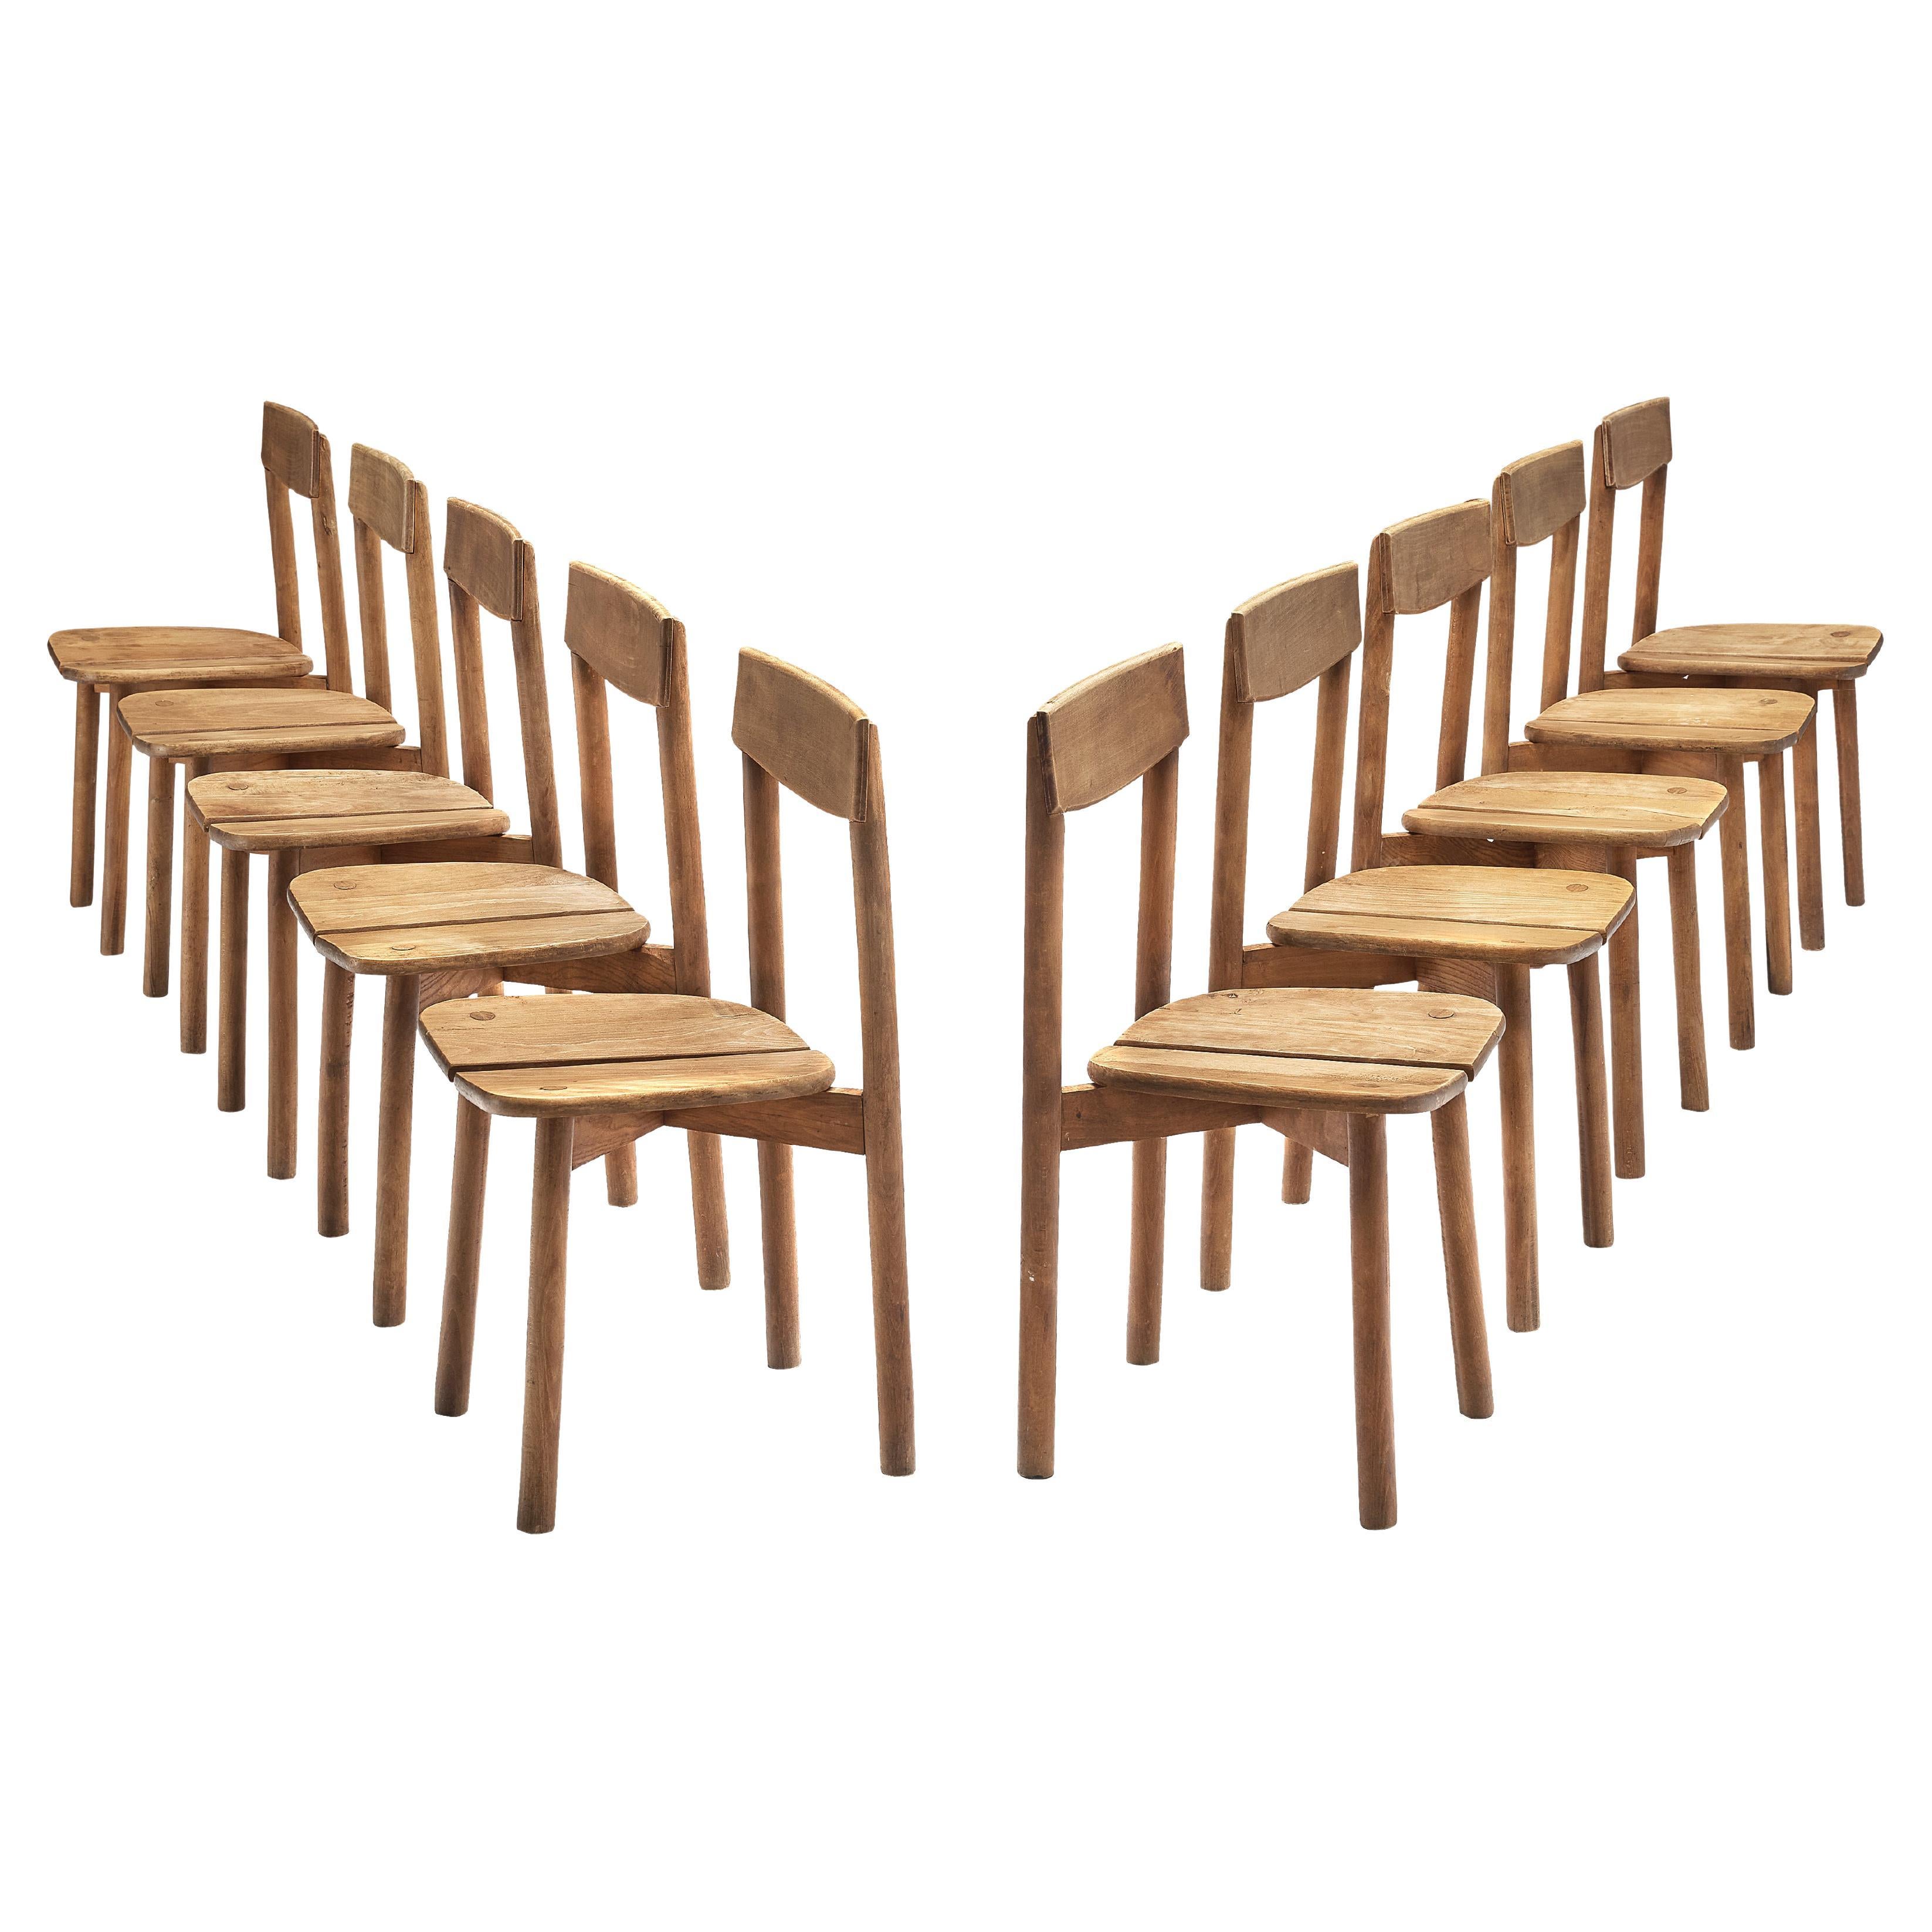 Pierre Gautier-Delaye Set of Ten Dining Chairs